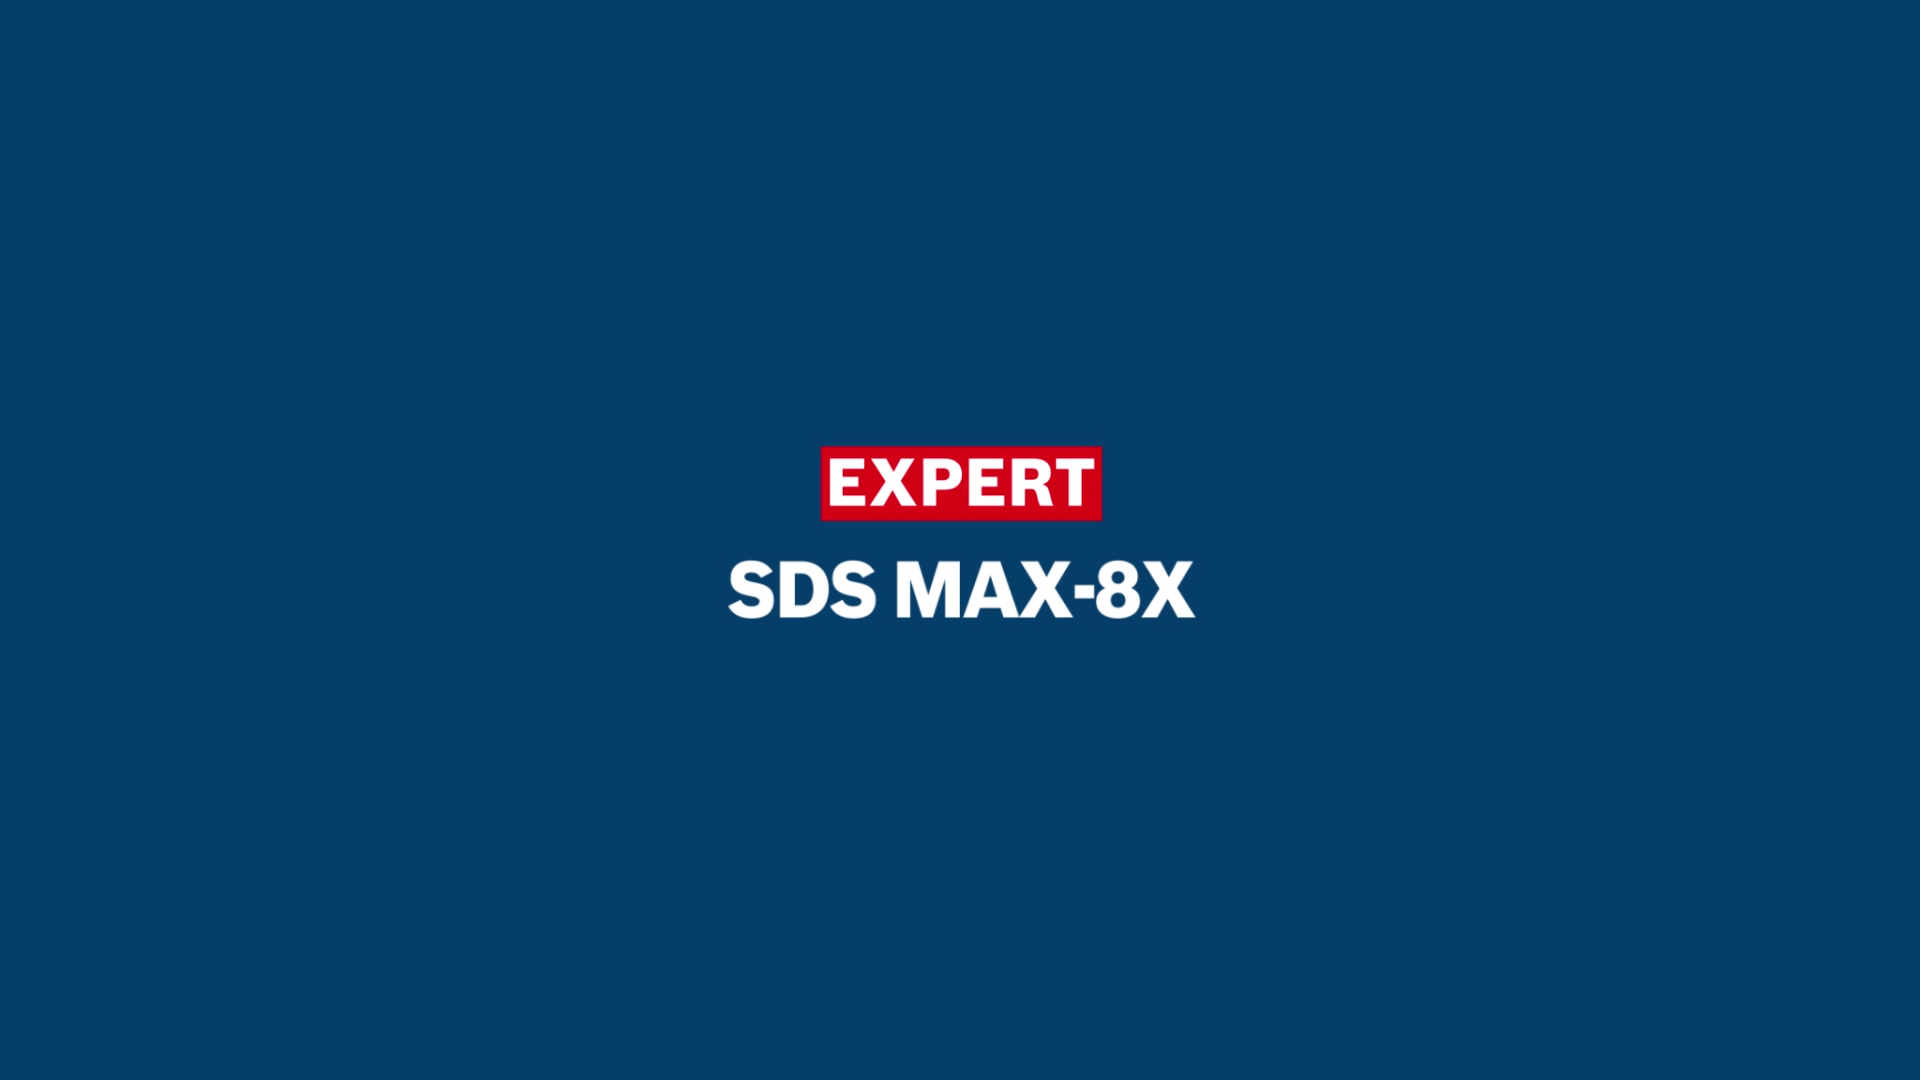 EXPERT SDS max-8X